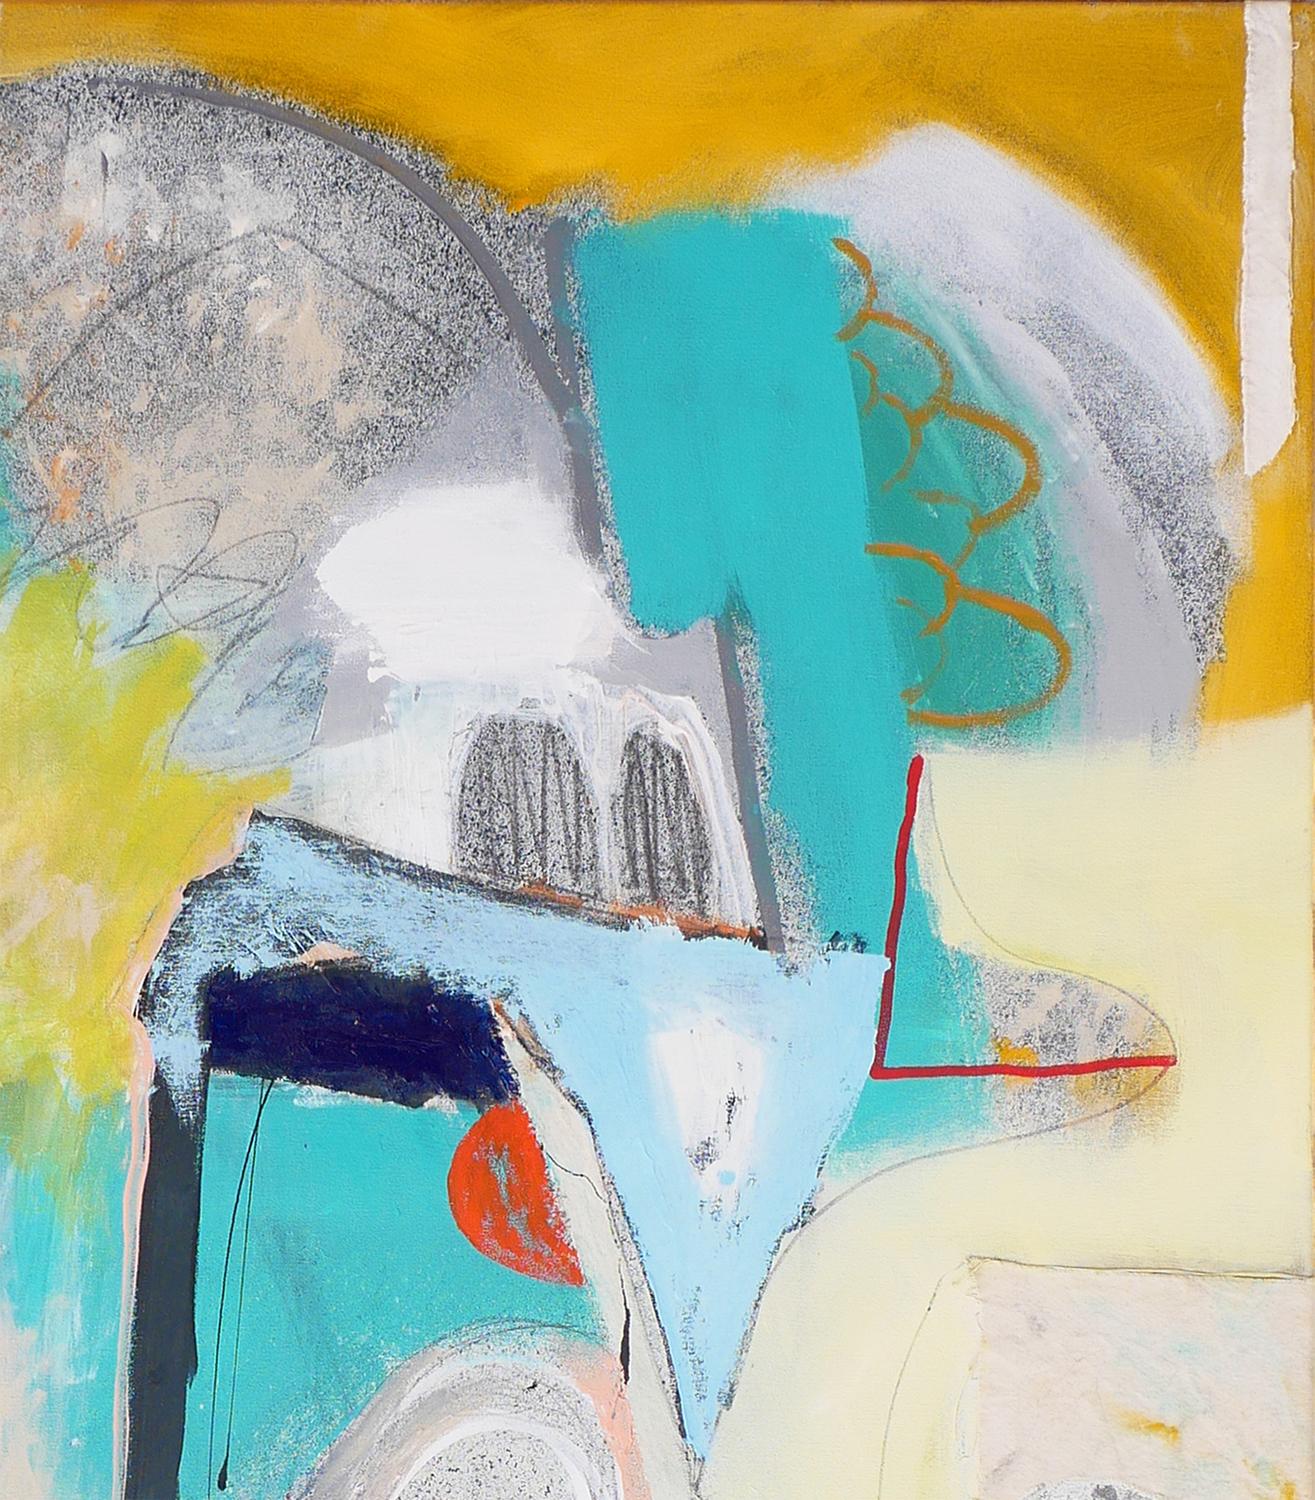 Peinture abstraite contemporaine et colorée de l'artiste local de Houston, Peter Healy. Actuellement en vedette dans l'exposition 